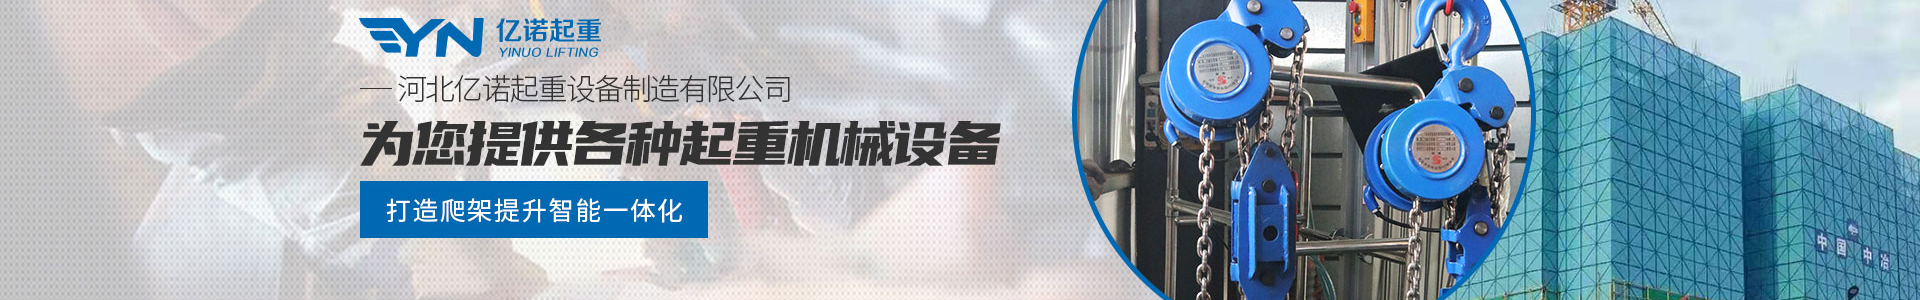 焊罐环链电动葫芦_产品展示_亿诺起重有限公司